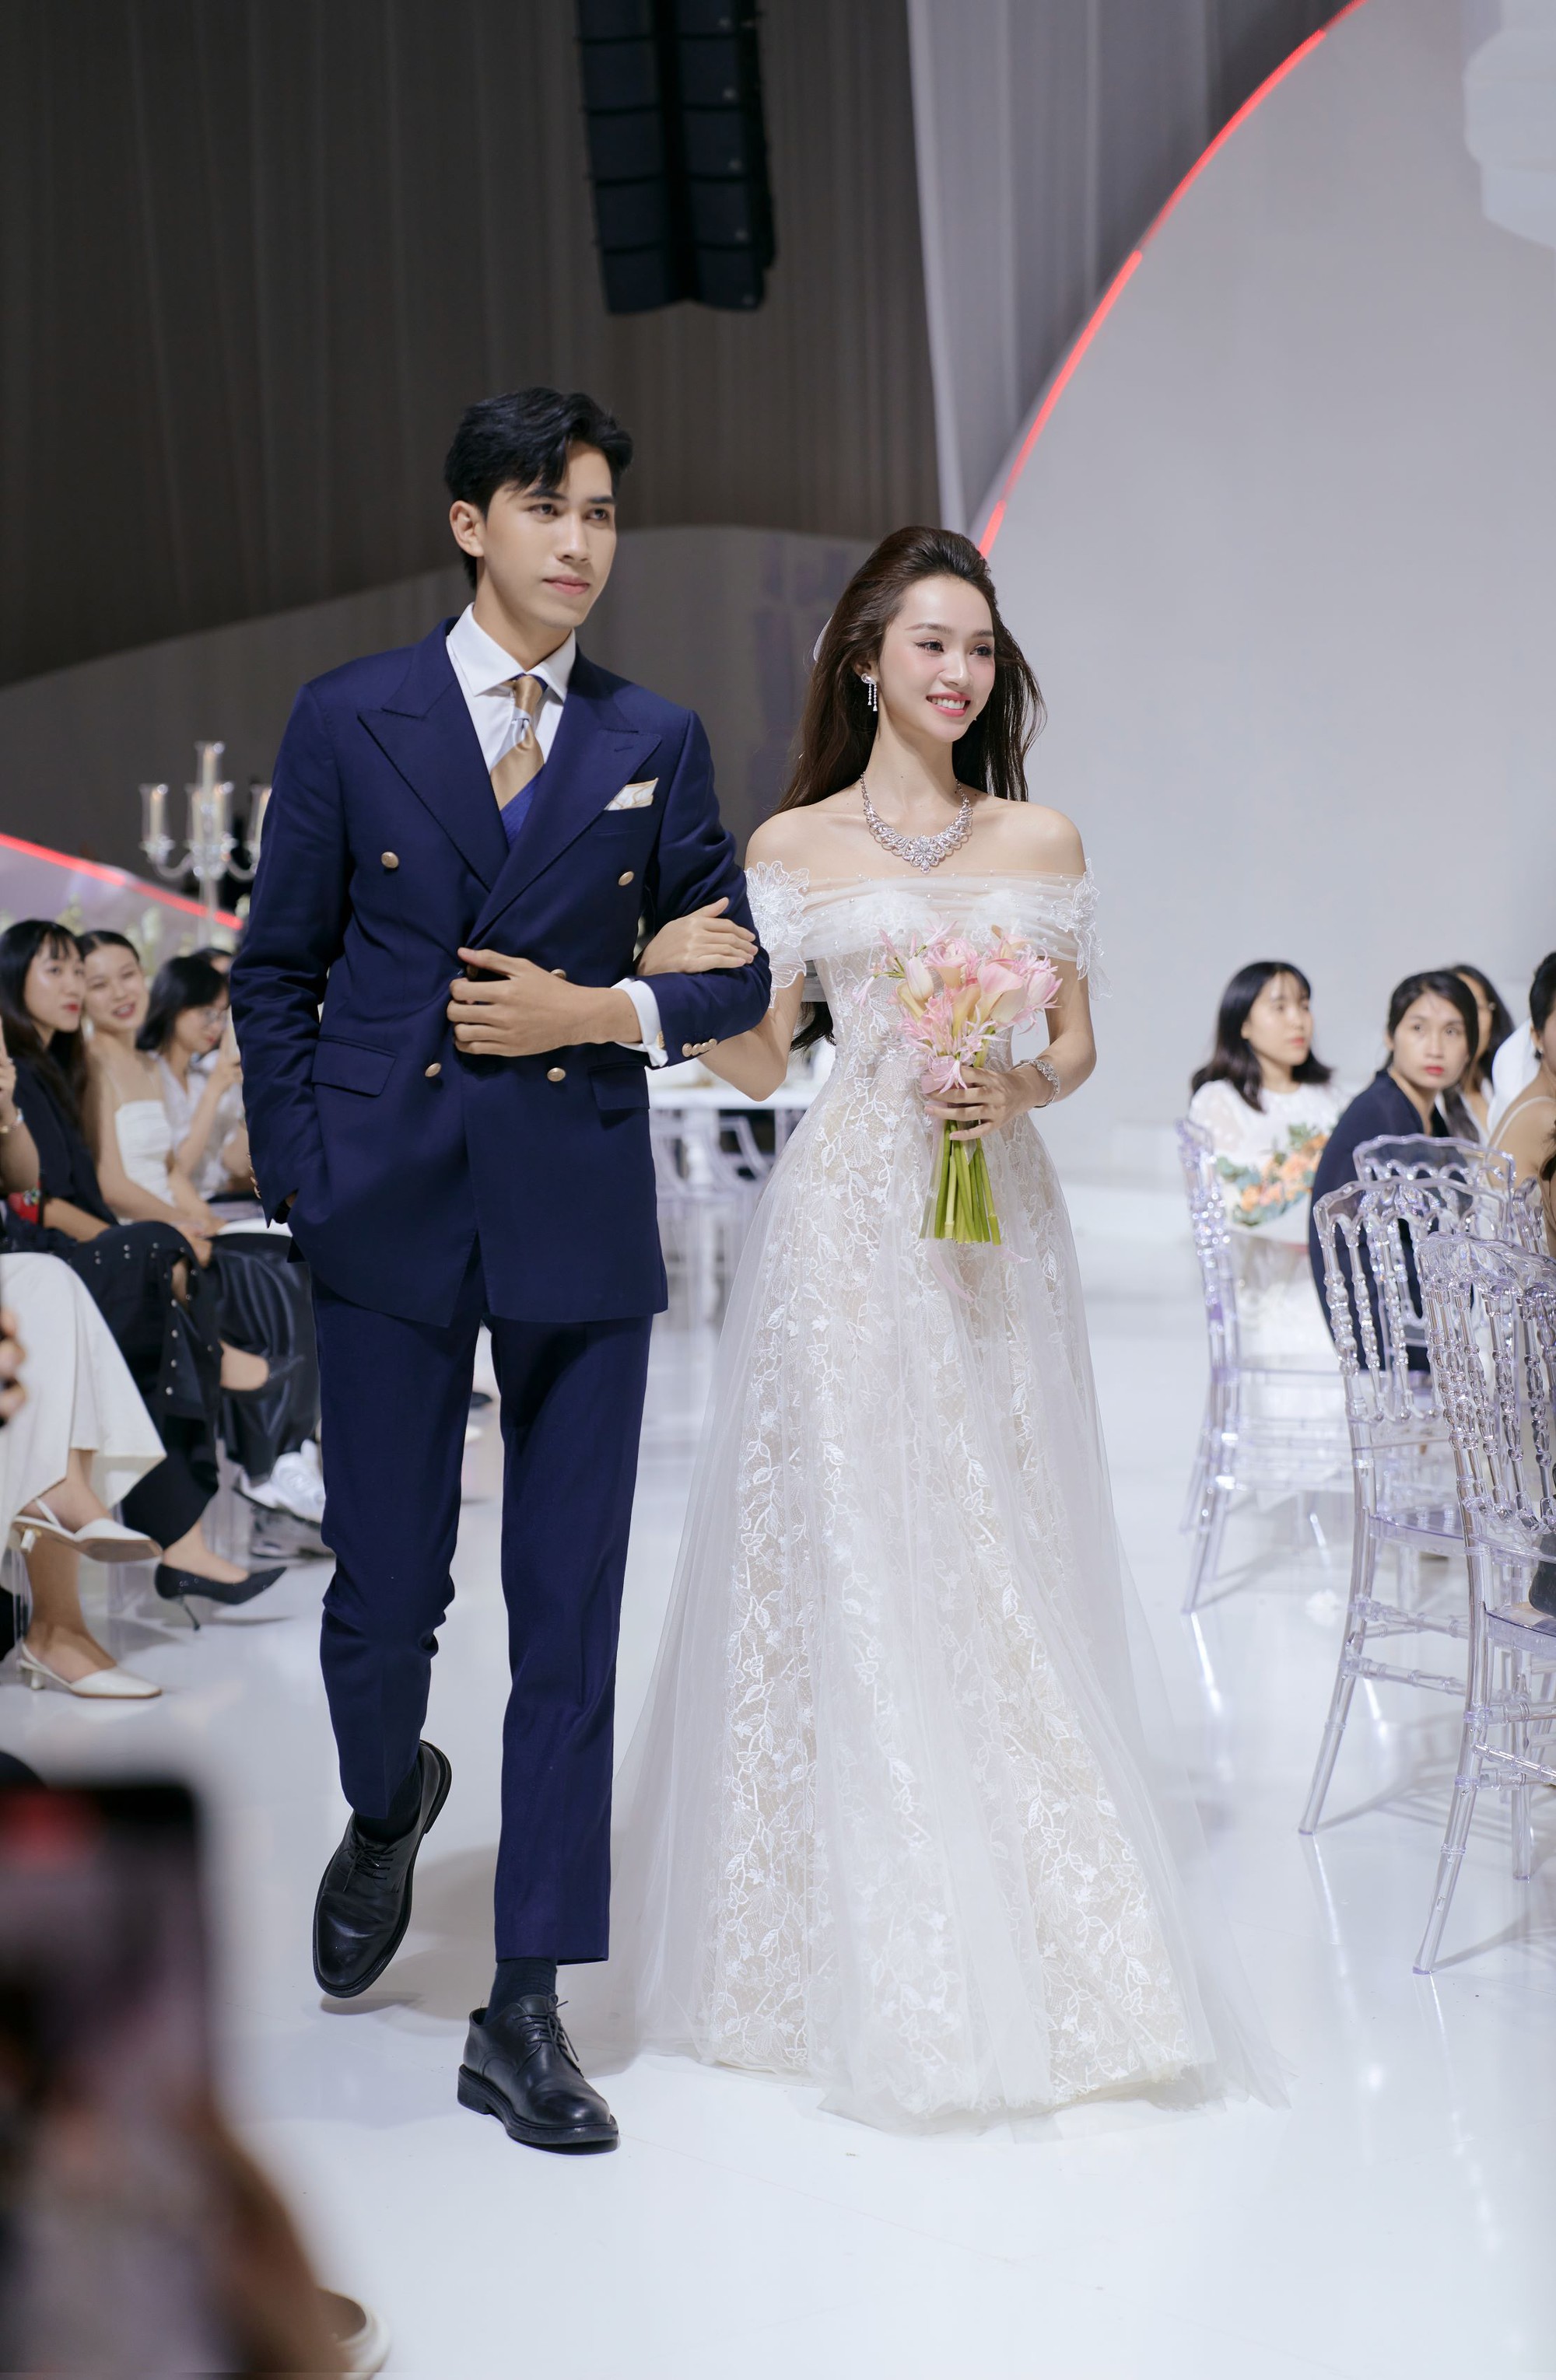 Á hậu Hương Ly cùng dàn người đẹp lộng lẫy trên sàn diễn thời trang áo cưới - Ảnh 5.